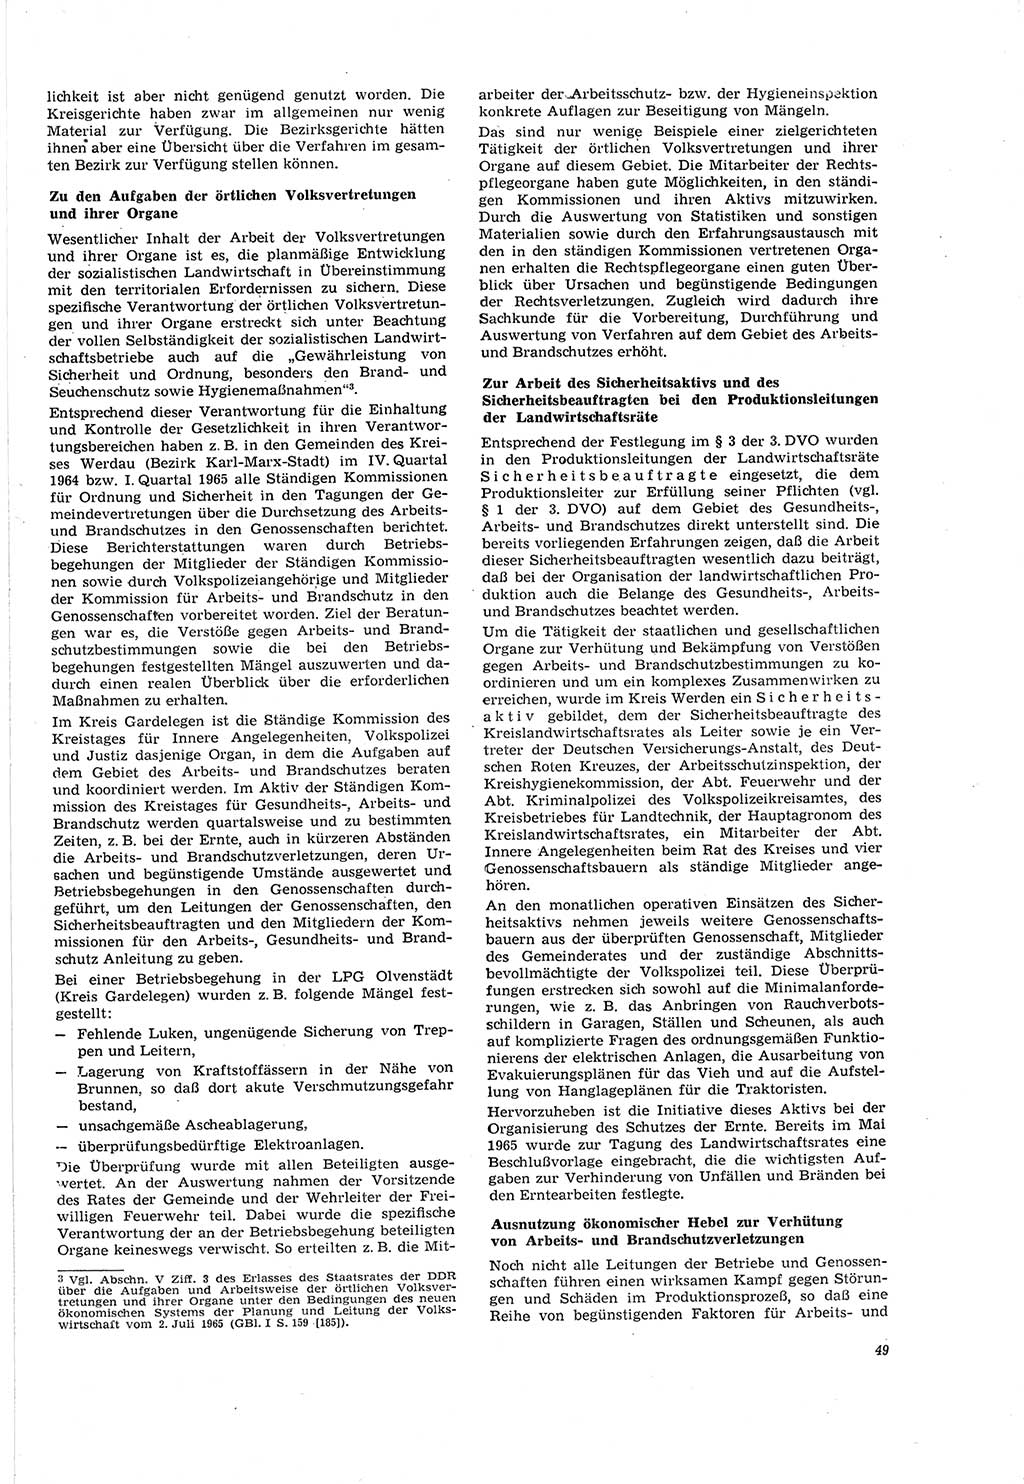 Neue Justiz (NJ), Zeitschrift für Recht und Rechtswissenschaft [Deutsche Demokratische Republik (DDR)], 20. Jahrgang 1966, Seite 49 (NJ DDR 1966, S. 49)